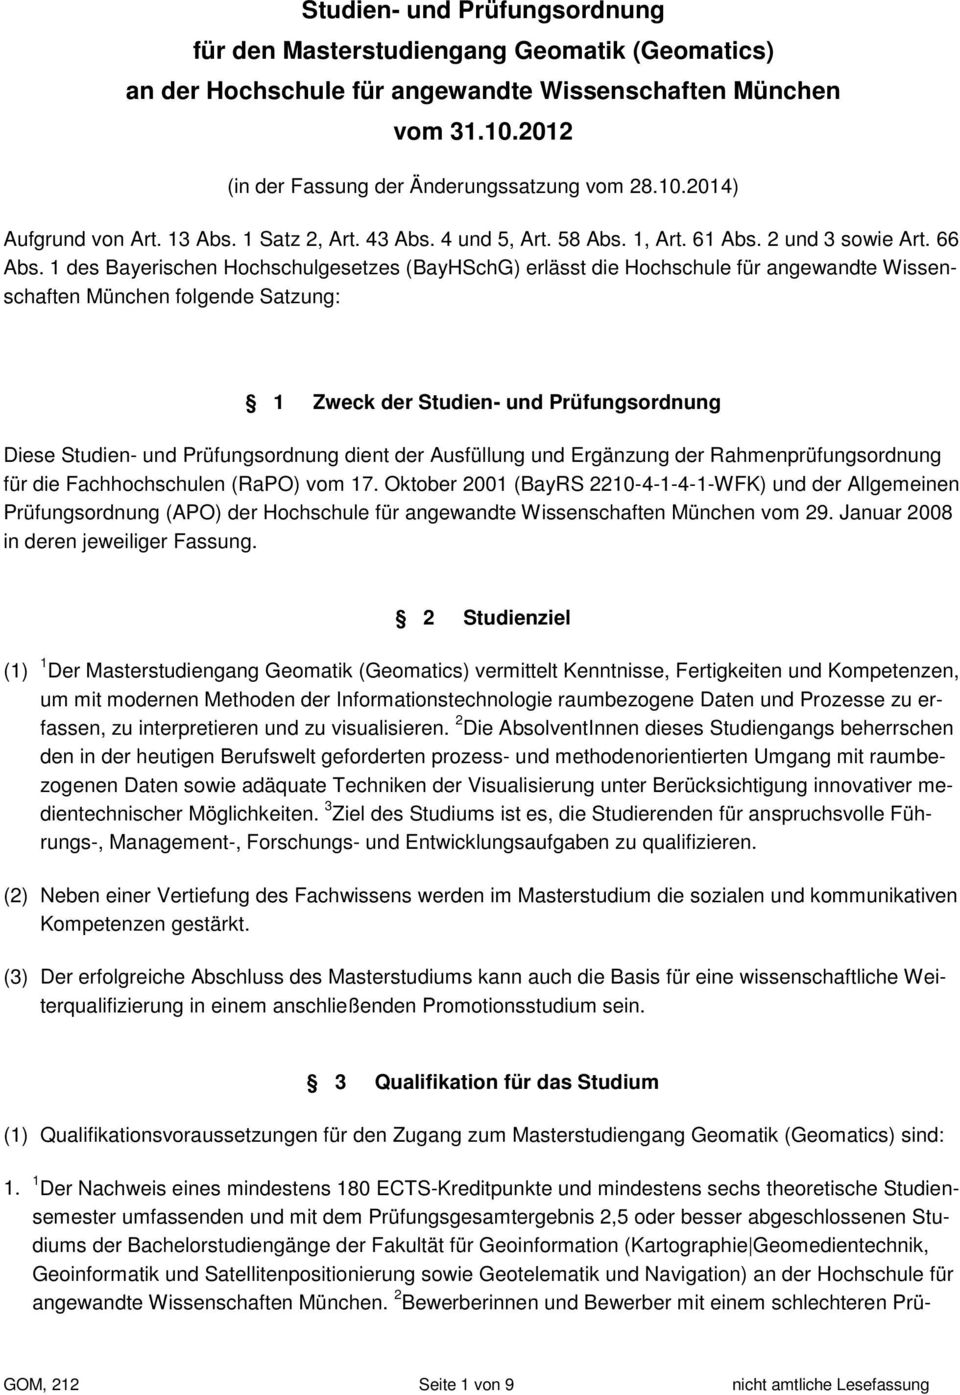 1 des Bayerischen Hochschulgesetzes (BayHSchG) erlässt die Hochschule für angewandte Wissenschaften München folgende Satzung: 1 Zweck der Studien- und Prüfungsordnung Diese Studien- und